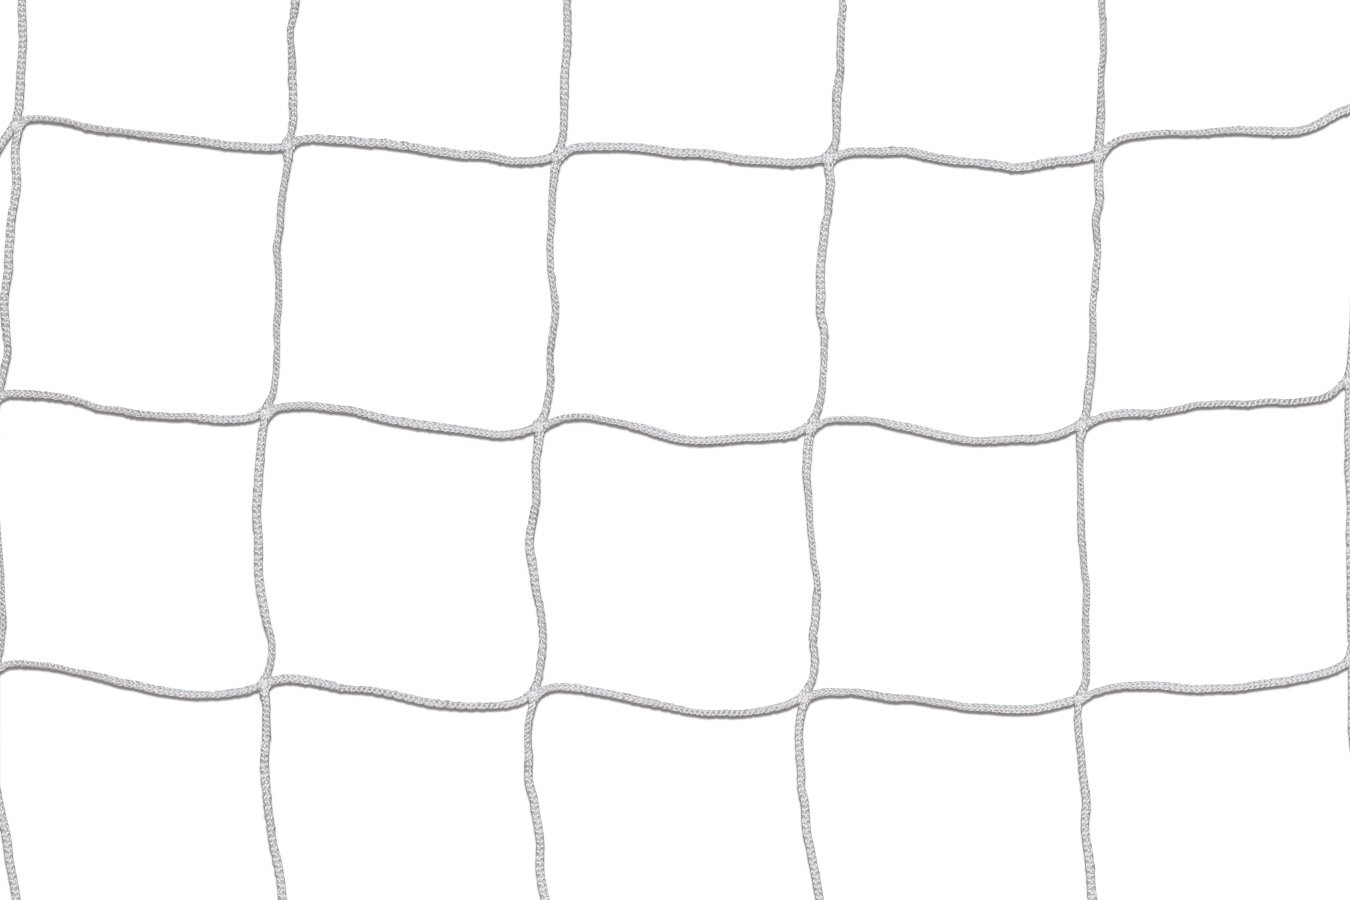 Kwikgoal 2mm Solid Braid Knotless Net | 3B7223 Nets Kwikgoal 6.5' x 12' White 